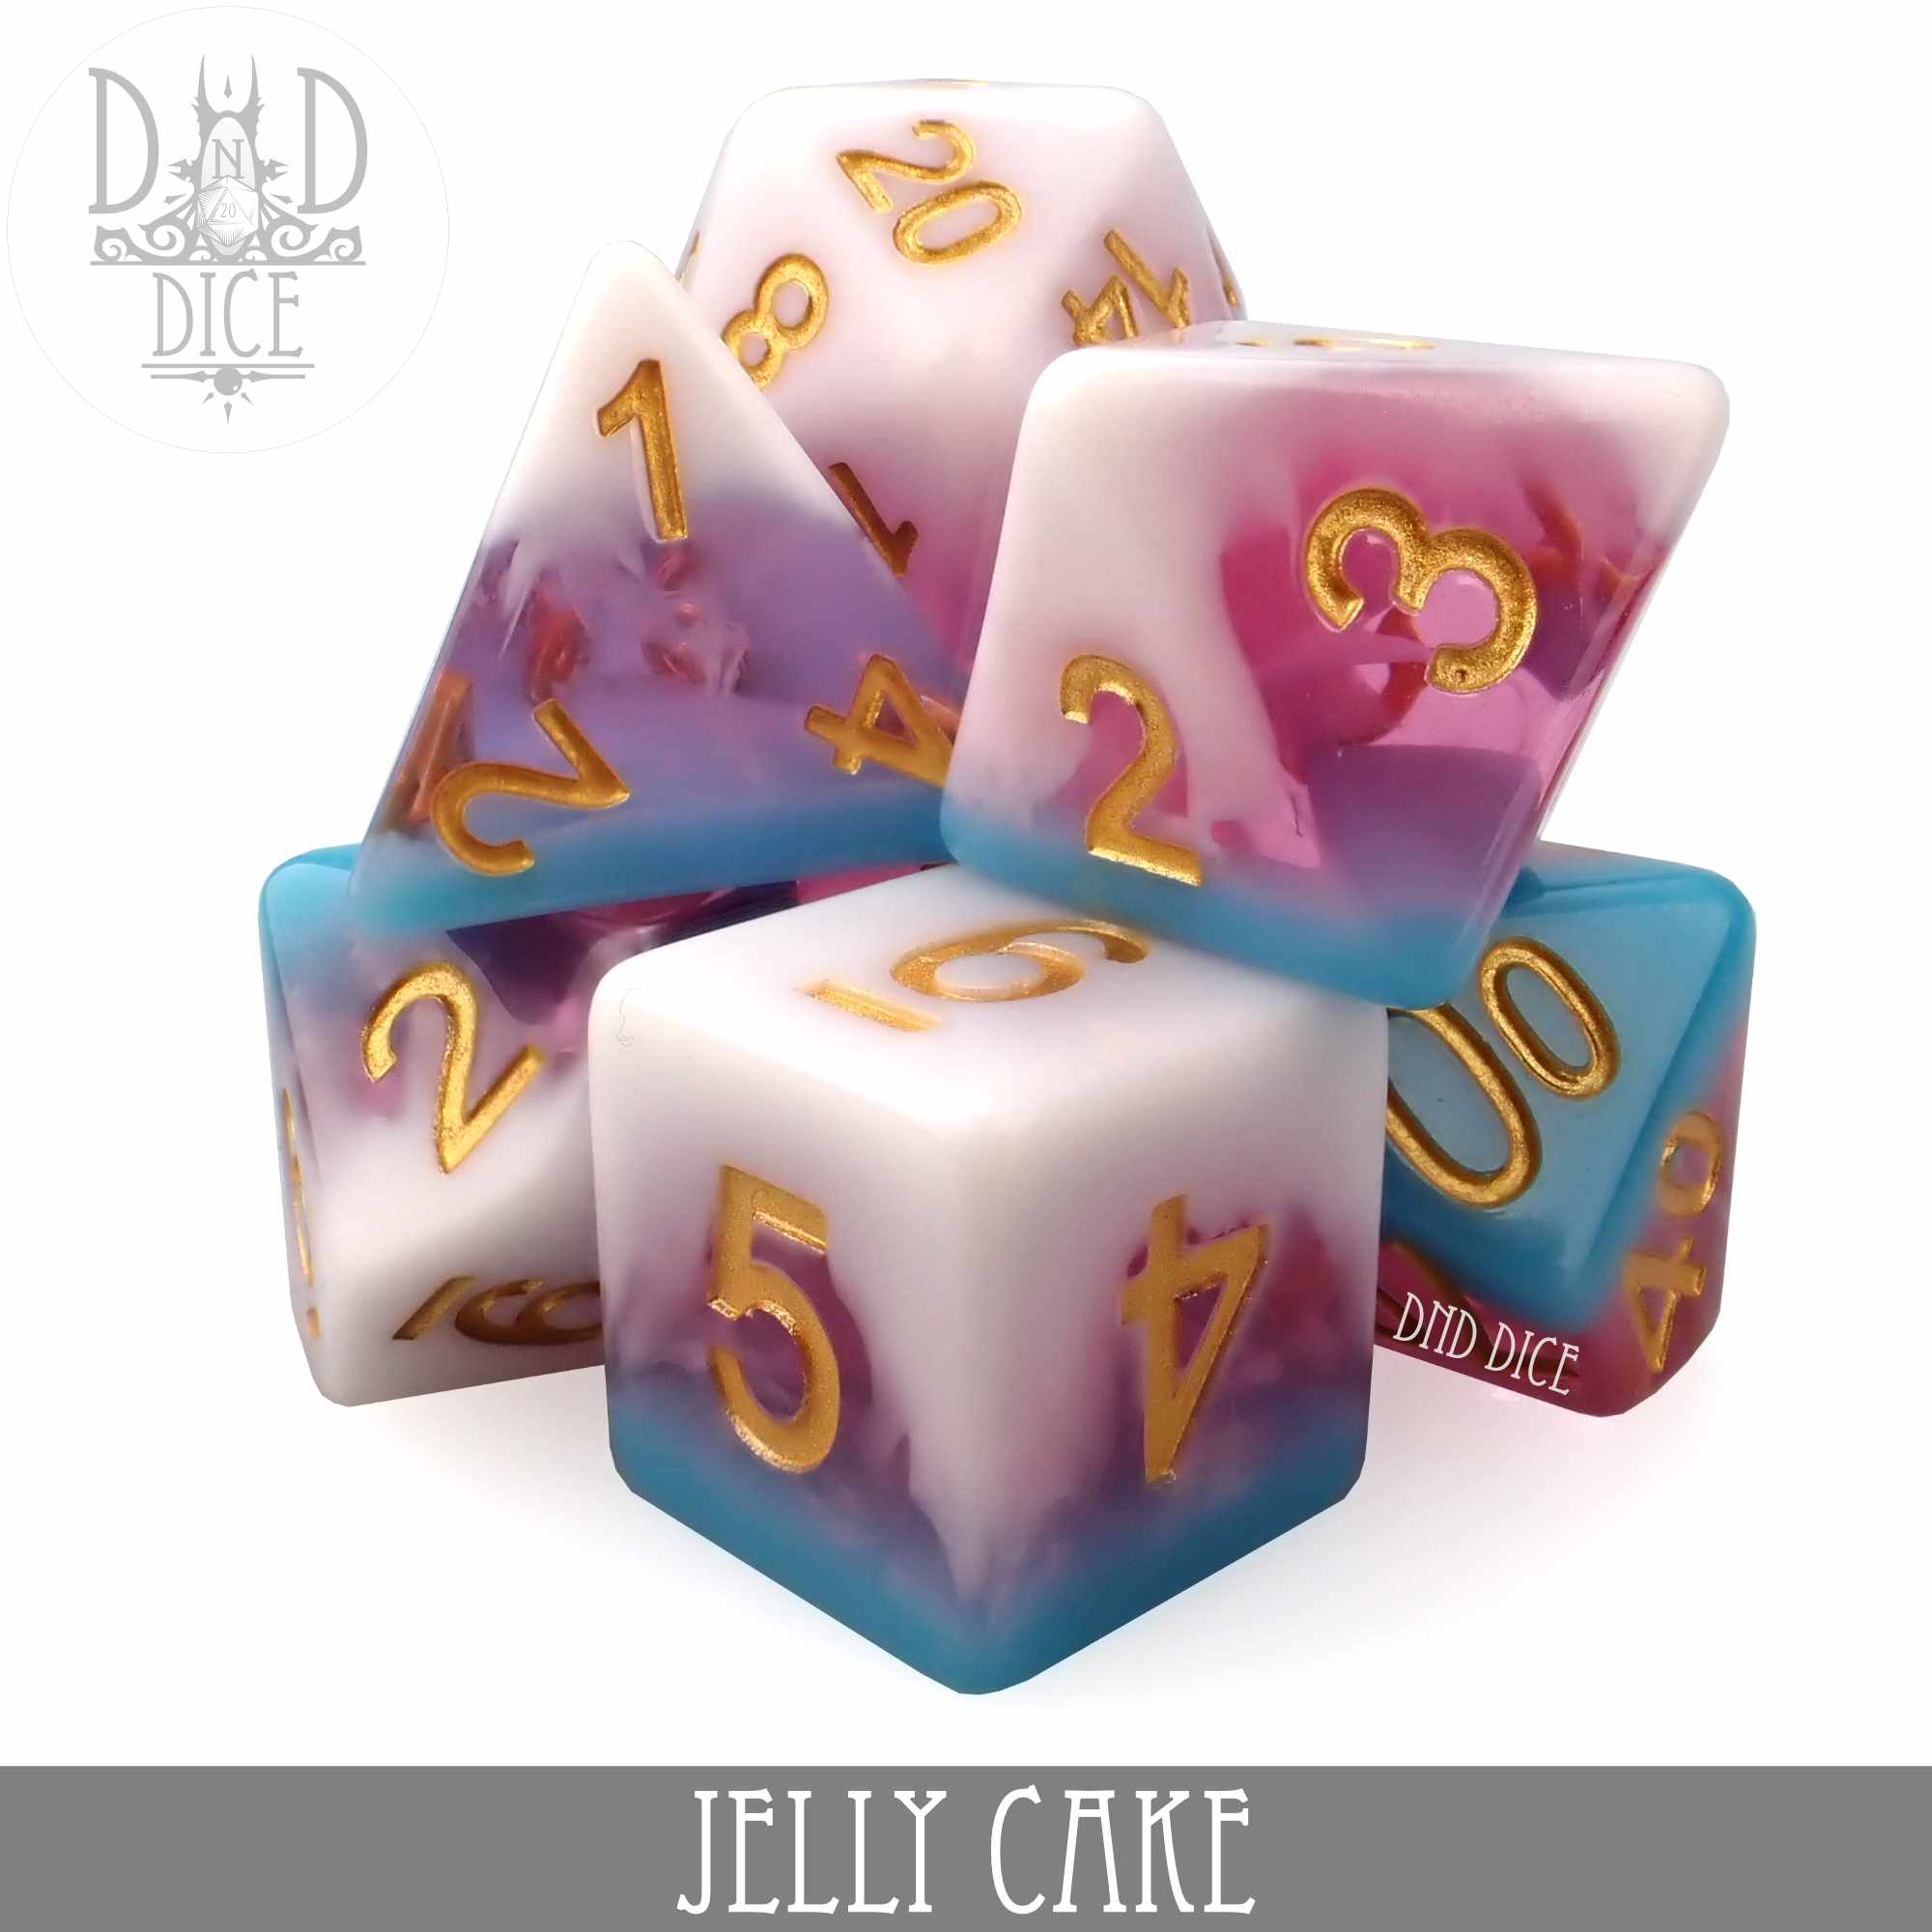 Jelly Cake Dice Set